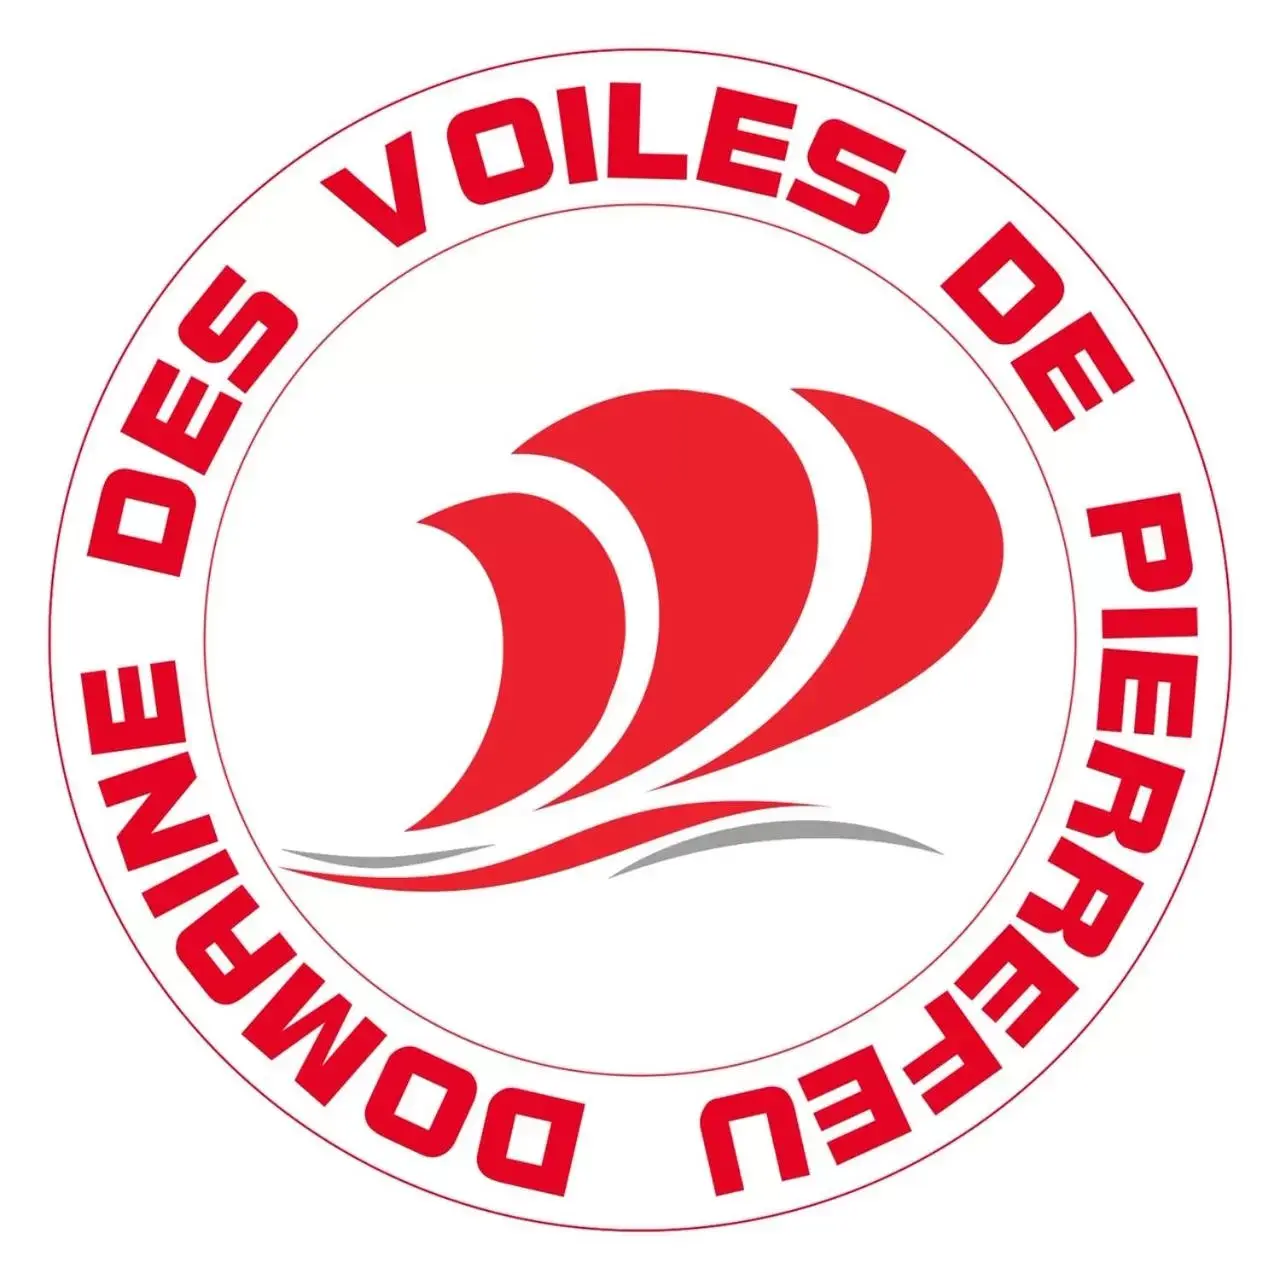 Property logo or sign in Domaine des voiles de Pierrefeu